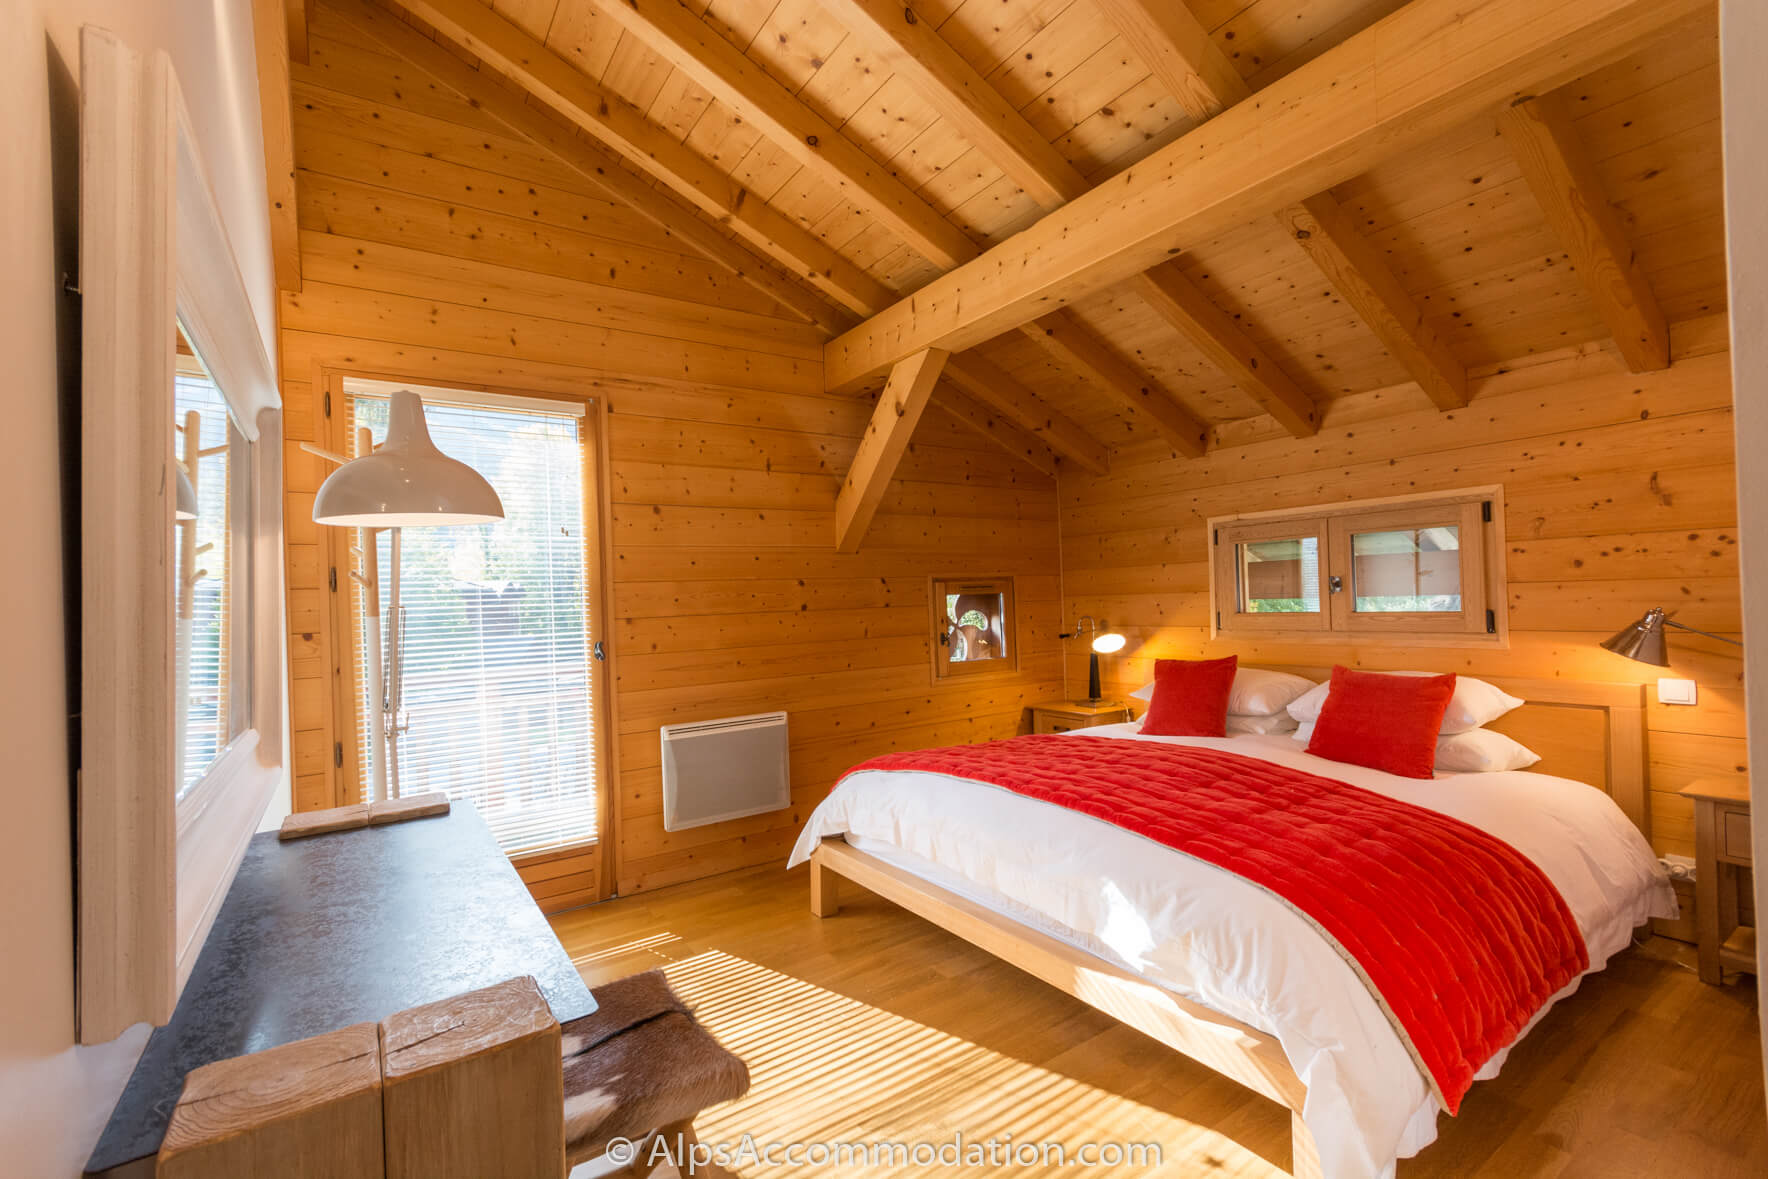 Chalet La Boissière Samoëns - Ensuite bedroom with luxurious king size bed and jacuzzi bath